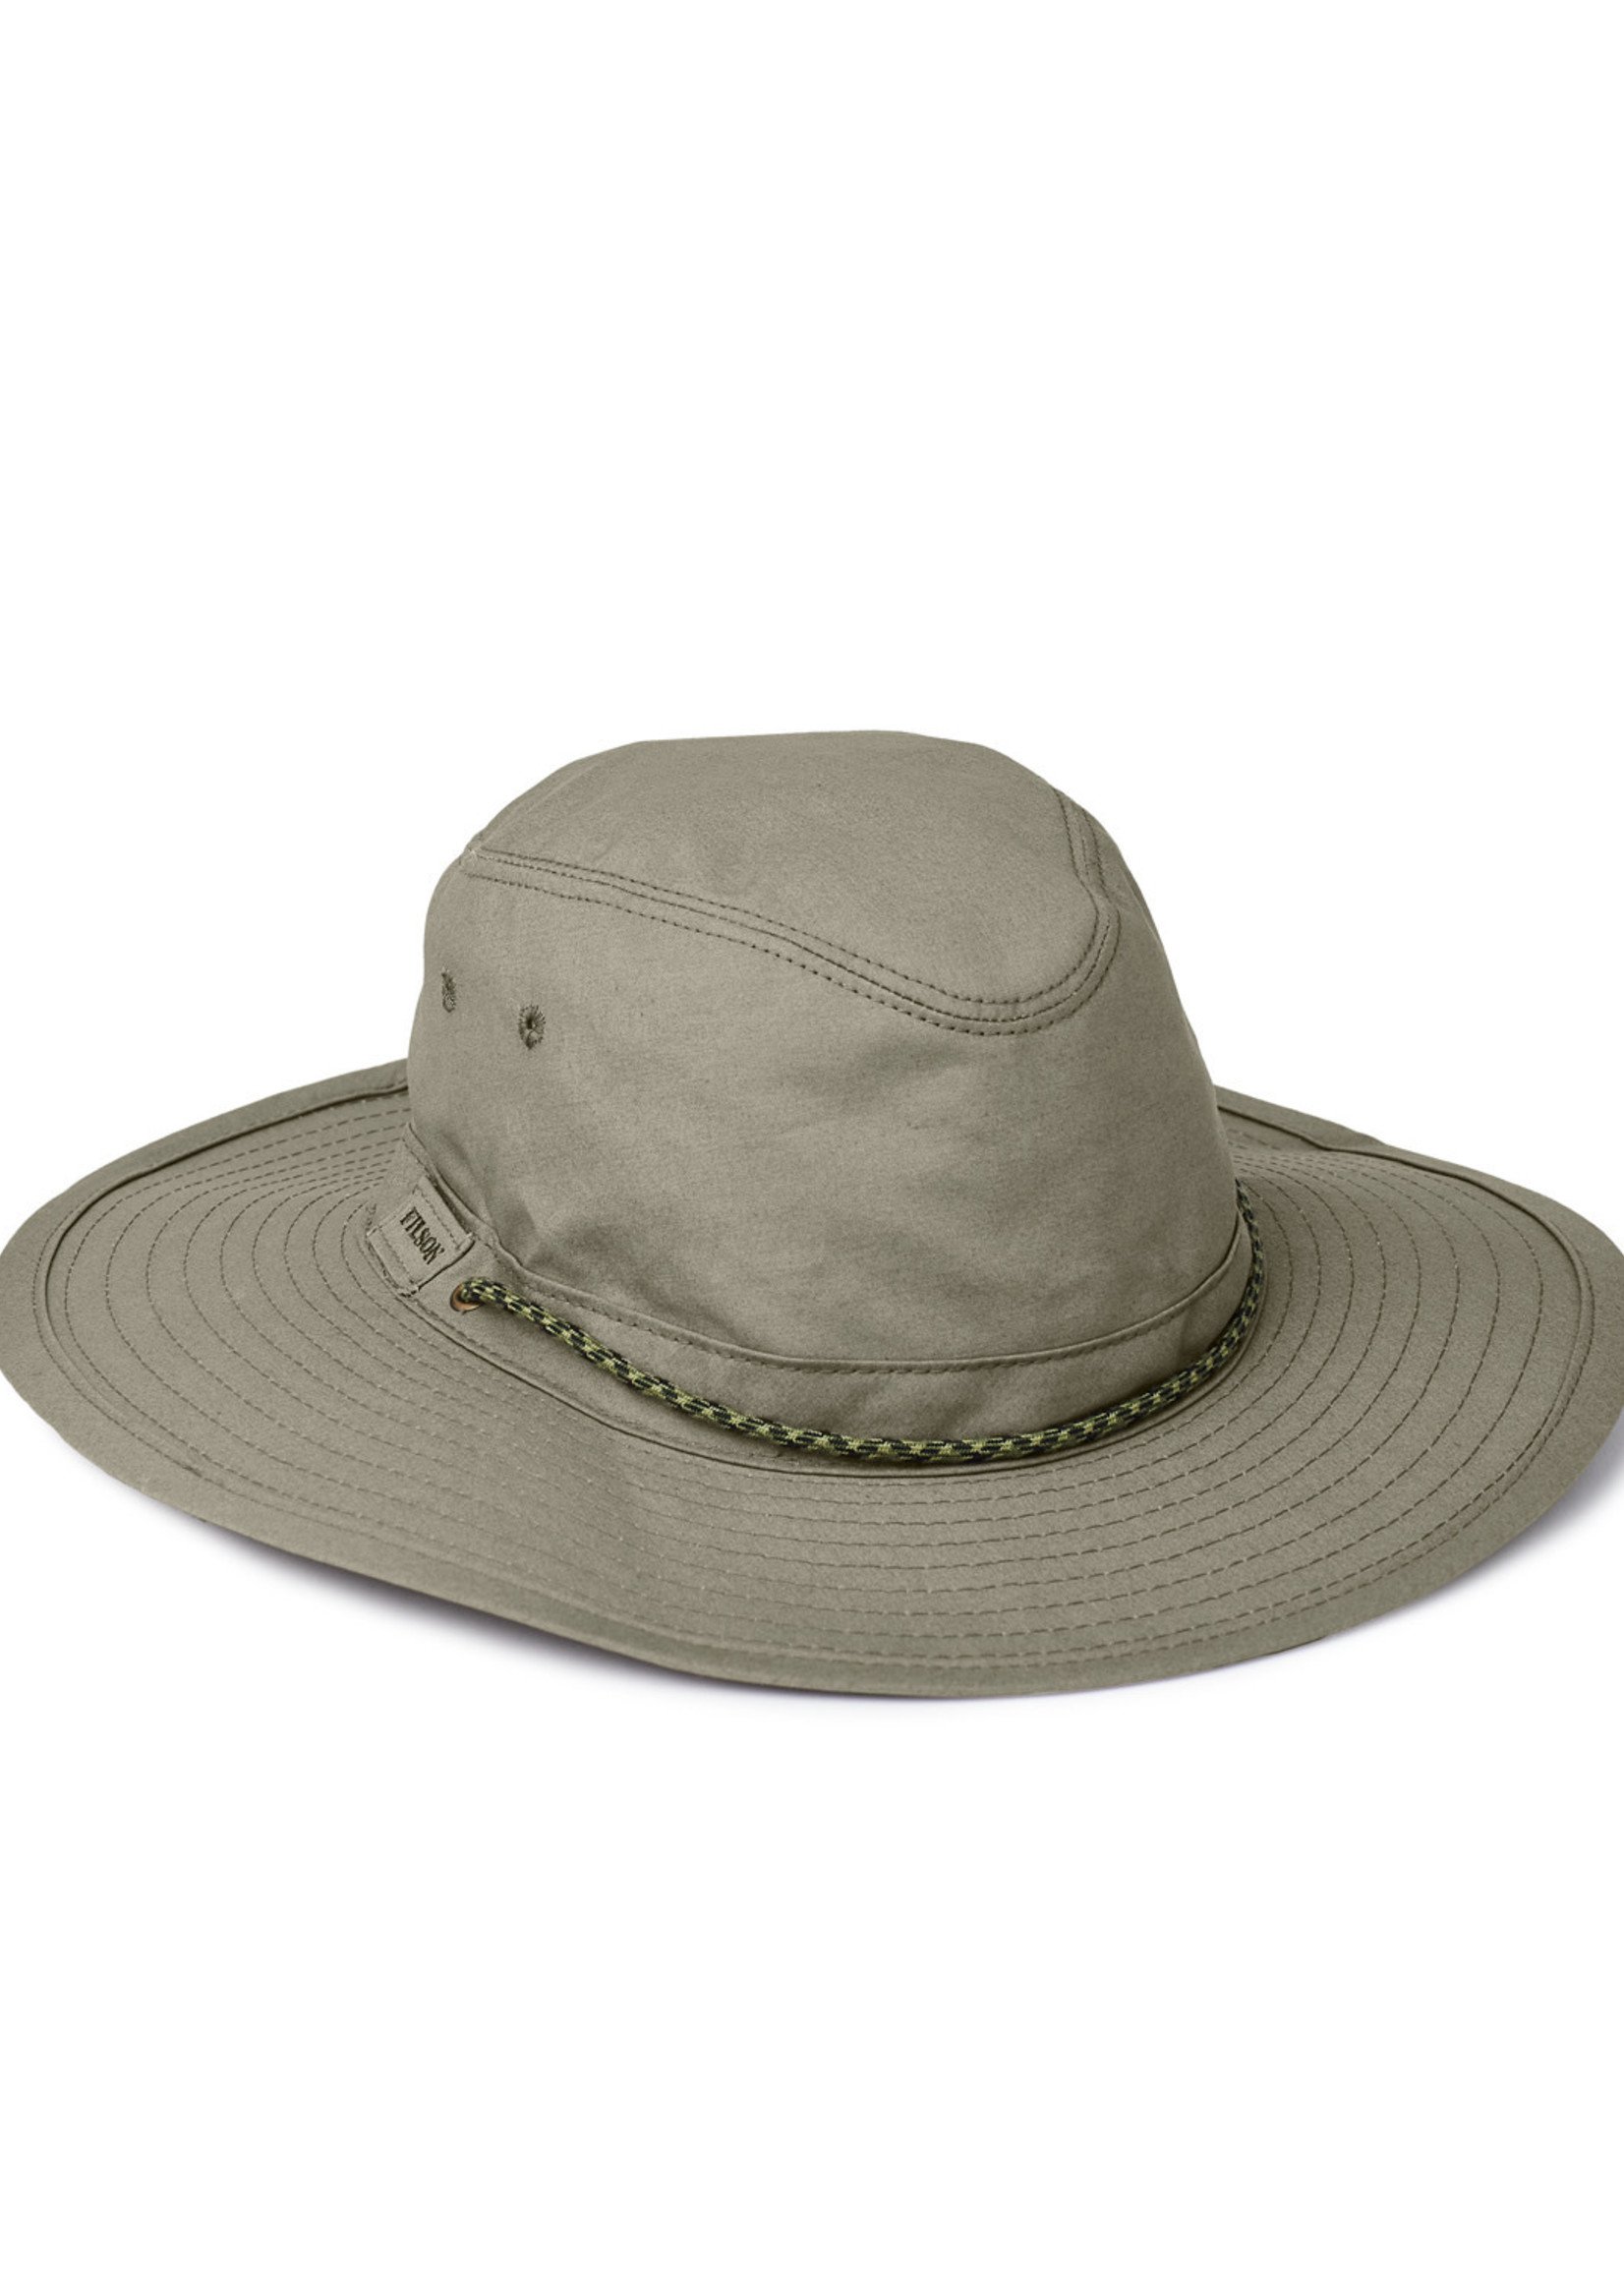 Filson Twin Falls Travel Hat: OtterGreen